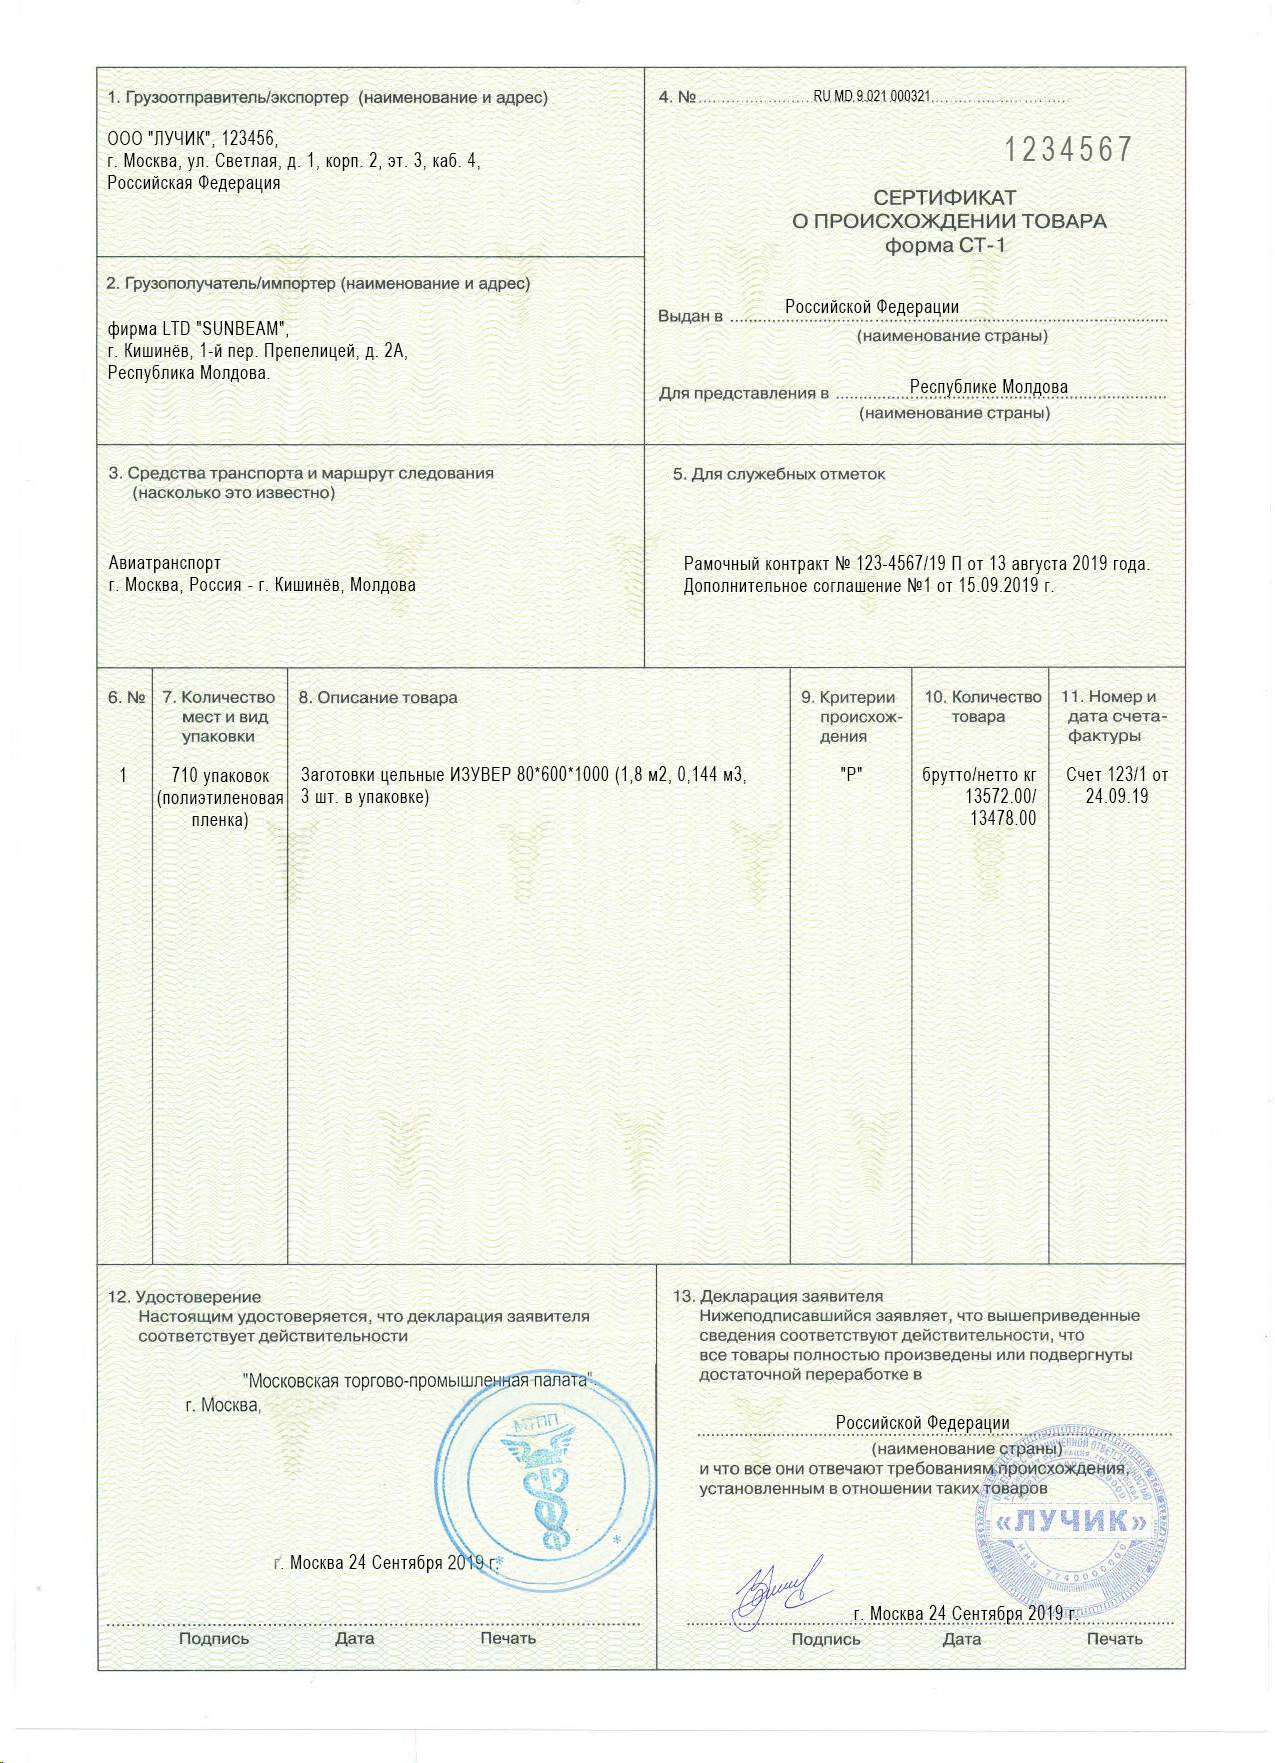 Сертификат происхождения товара общей формы (образец) :: businessman.ru